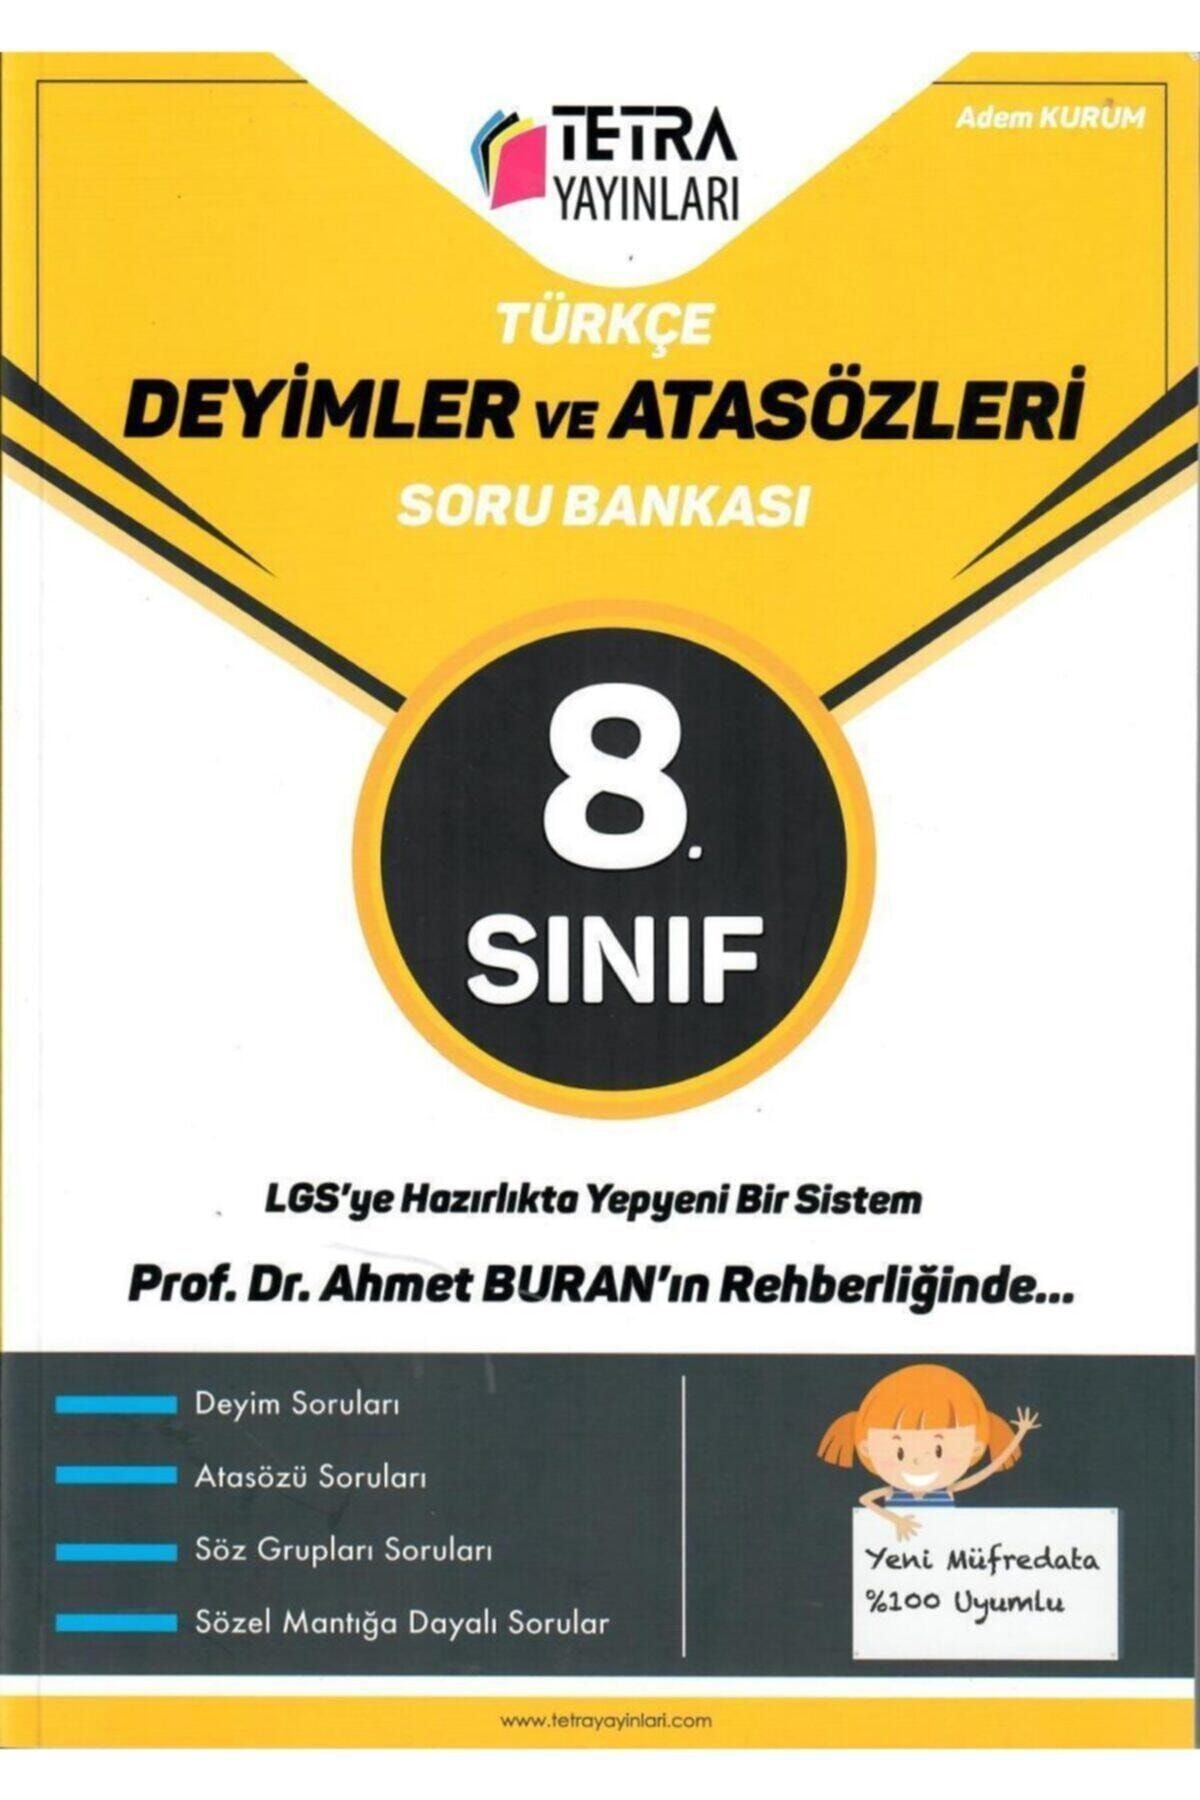 TETRA Yayınları Türkçe Deyimler Ve Atasözleri Soru Bankası